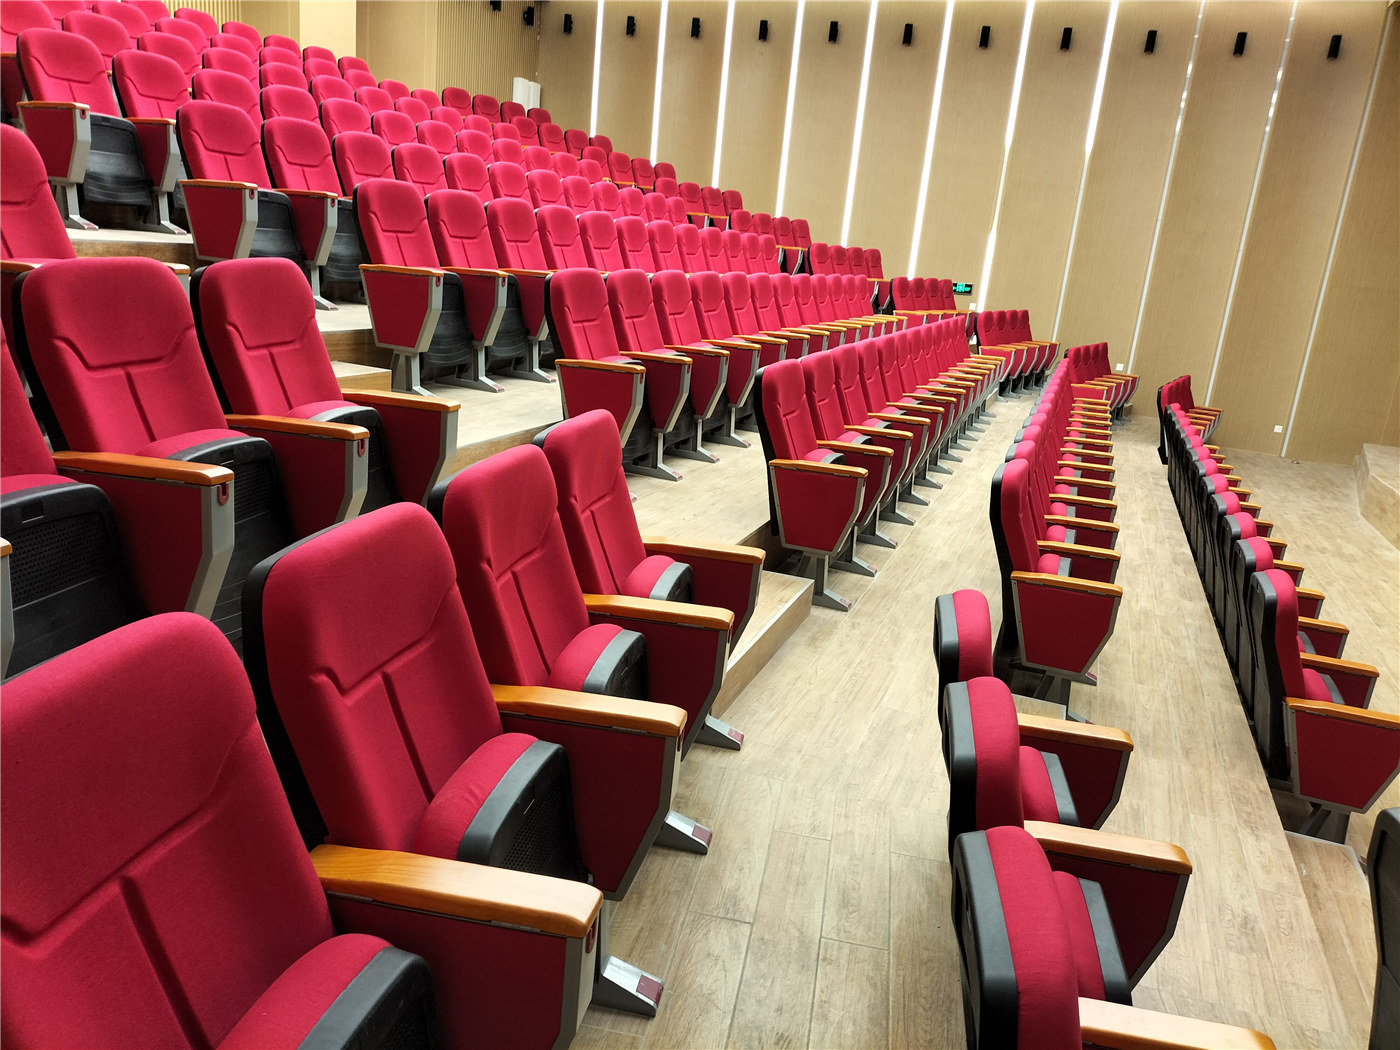 ထိပ်တန်းထုတ်လုပ်သူ203 မှ ဒီဇိုင်းကောင်းမွန်သော Auditorium ထိုင်ခုံများဖြင့် စွဲမက်ဖွယ်ကောင်းသော ပတ်ဝန်းကျင်ကို ဖန်တီးပါ။